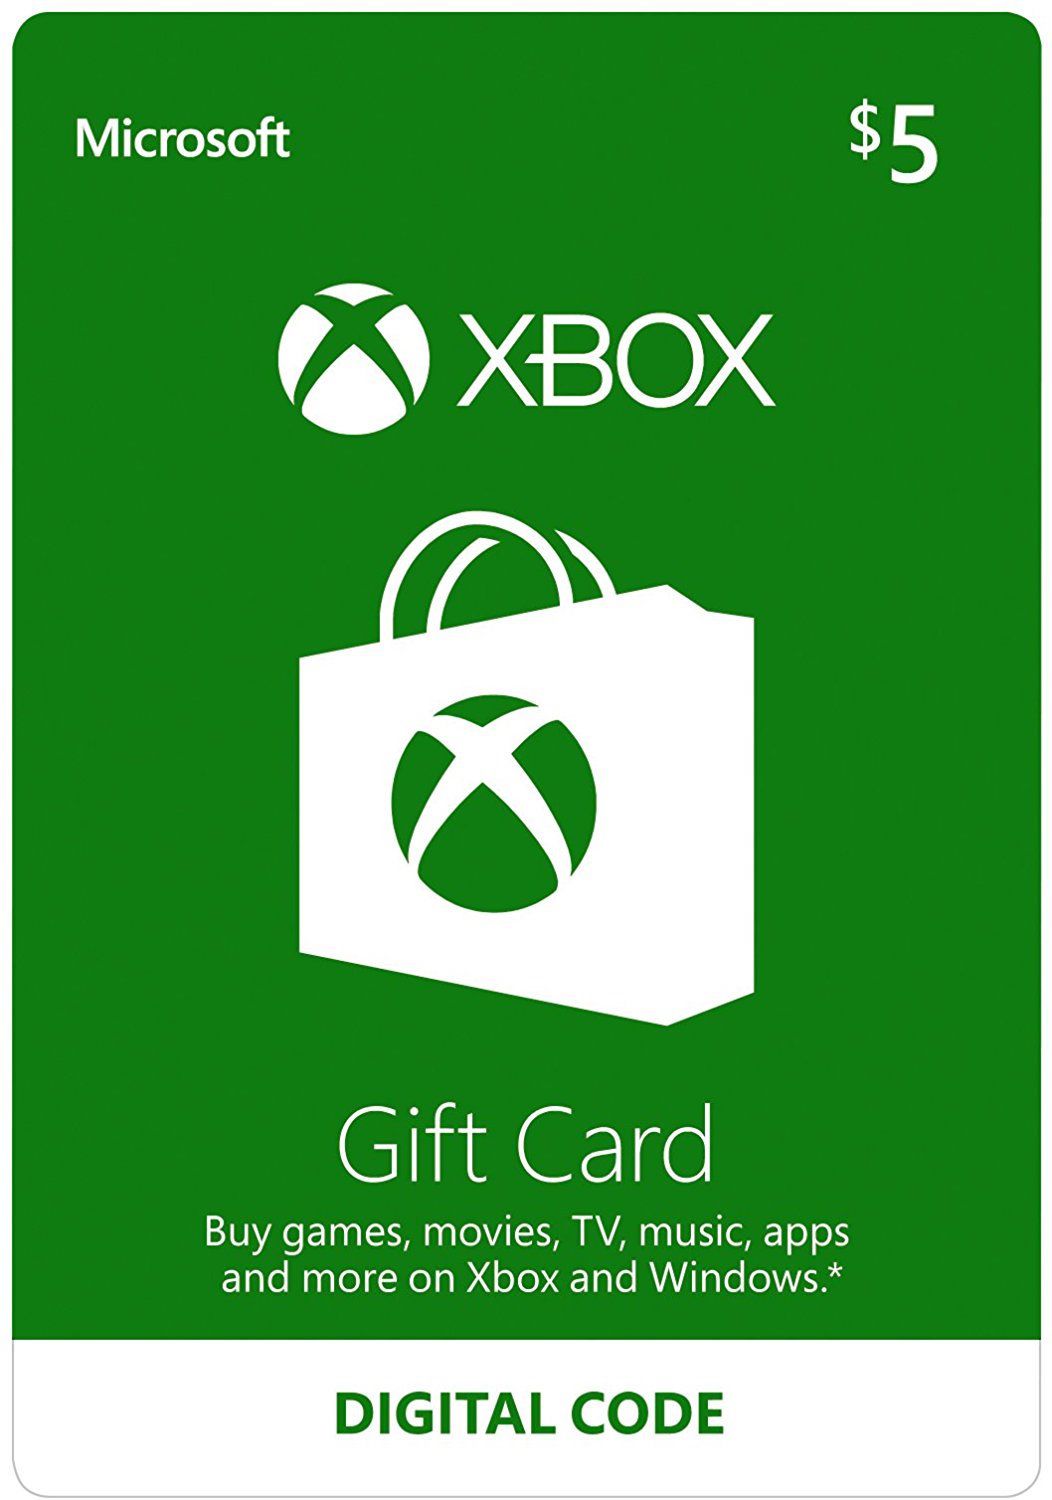 Comprar Cartão Google Play (Gift Card) $5 Dólares USA